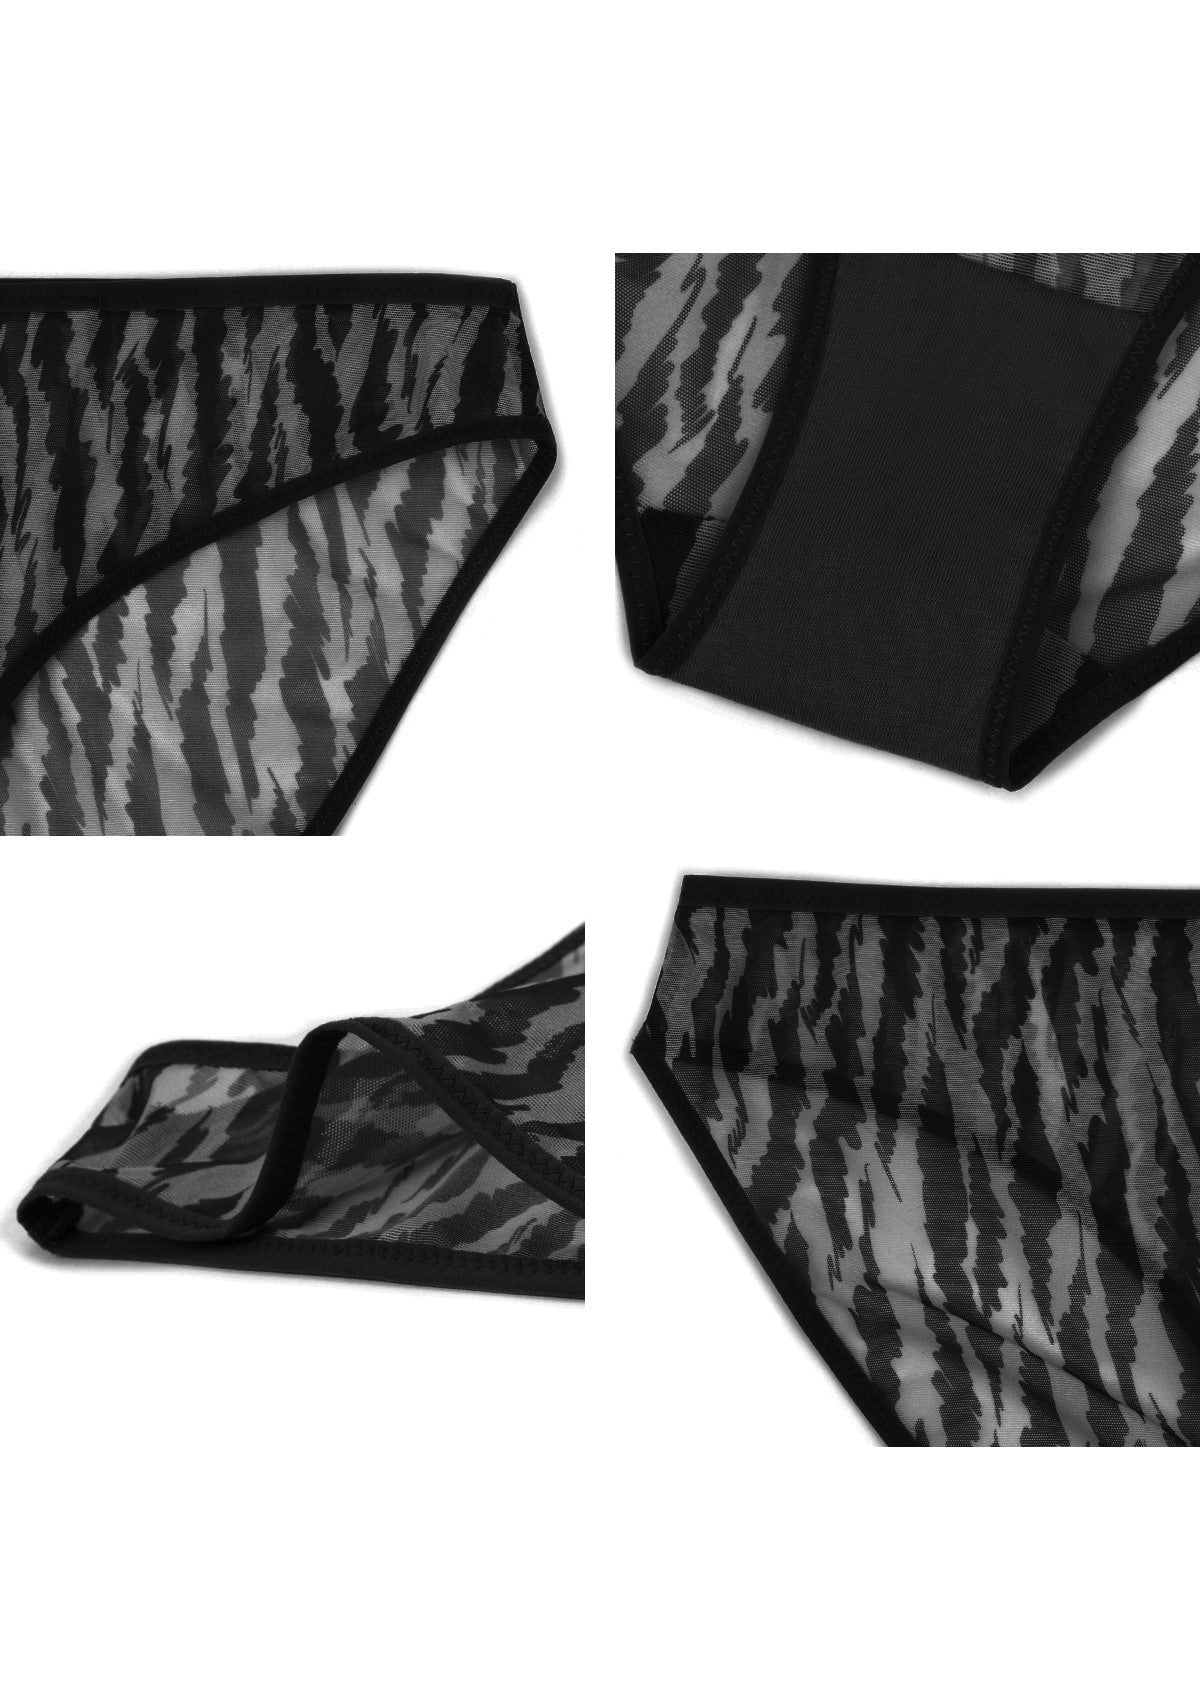 HSIA Breathable Sexy Feminine Lace Mesh Bikini Underwear - S / Black